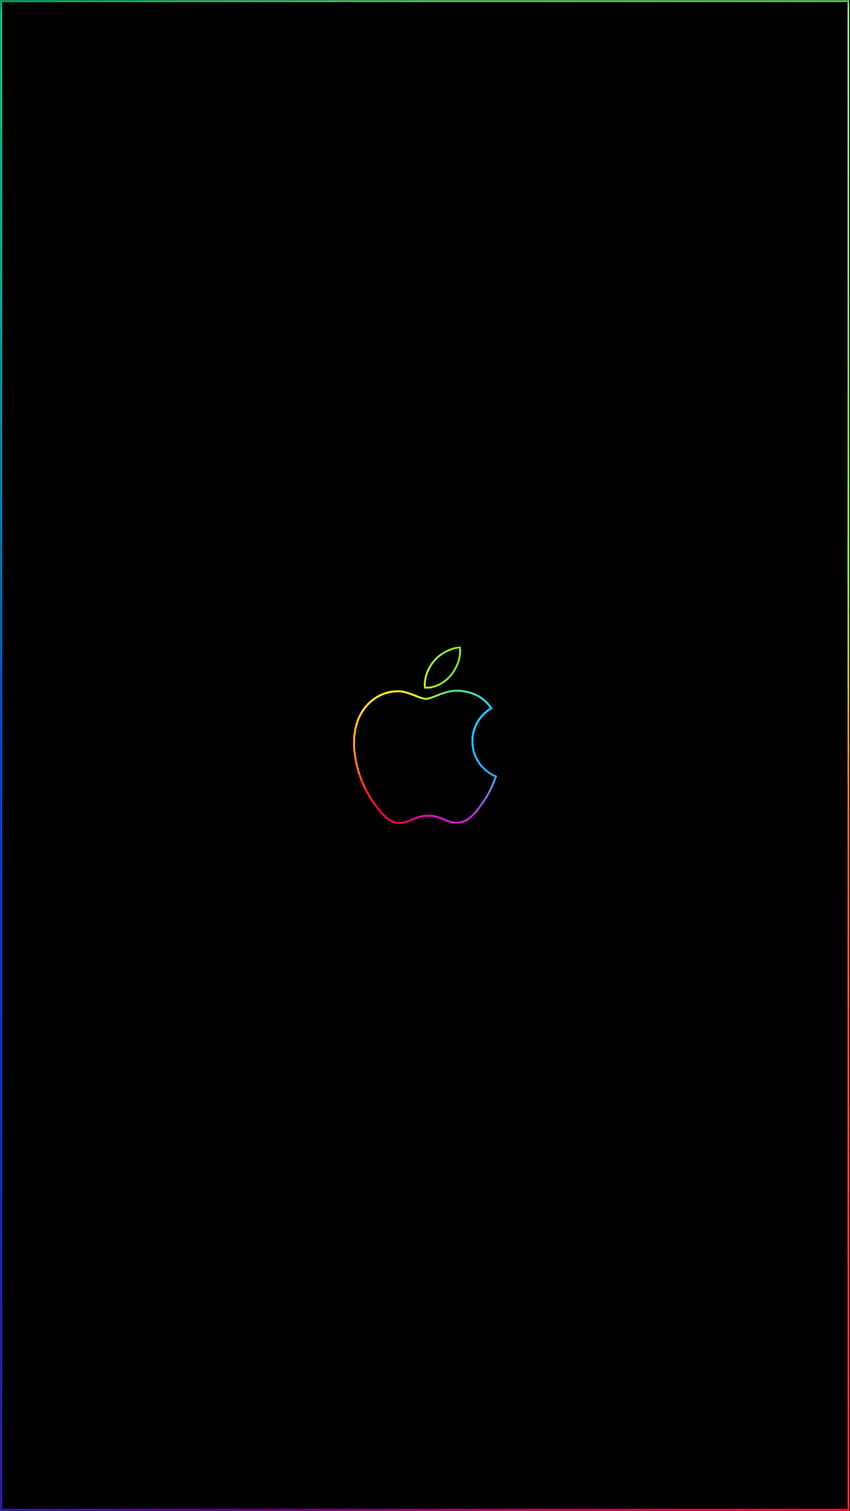 Borde del arco iris y logotipo de Apple Enlaces de iPhone Imgur, iPhone Black Apple fondo de pantalla del teléfono